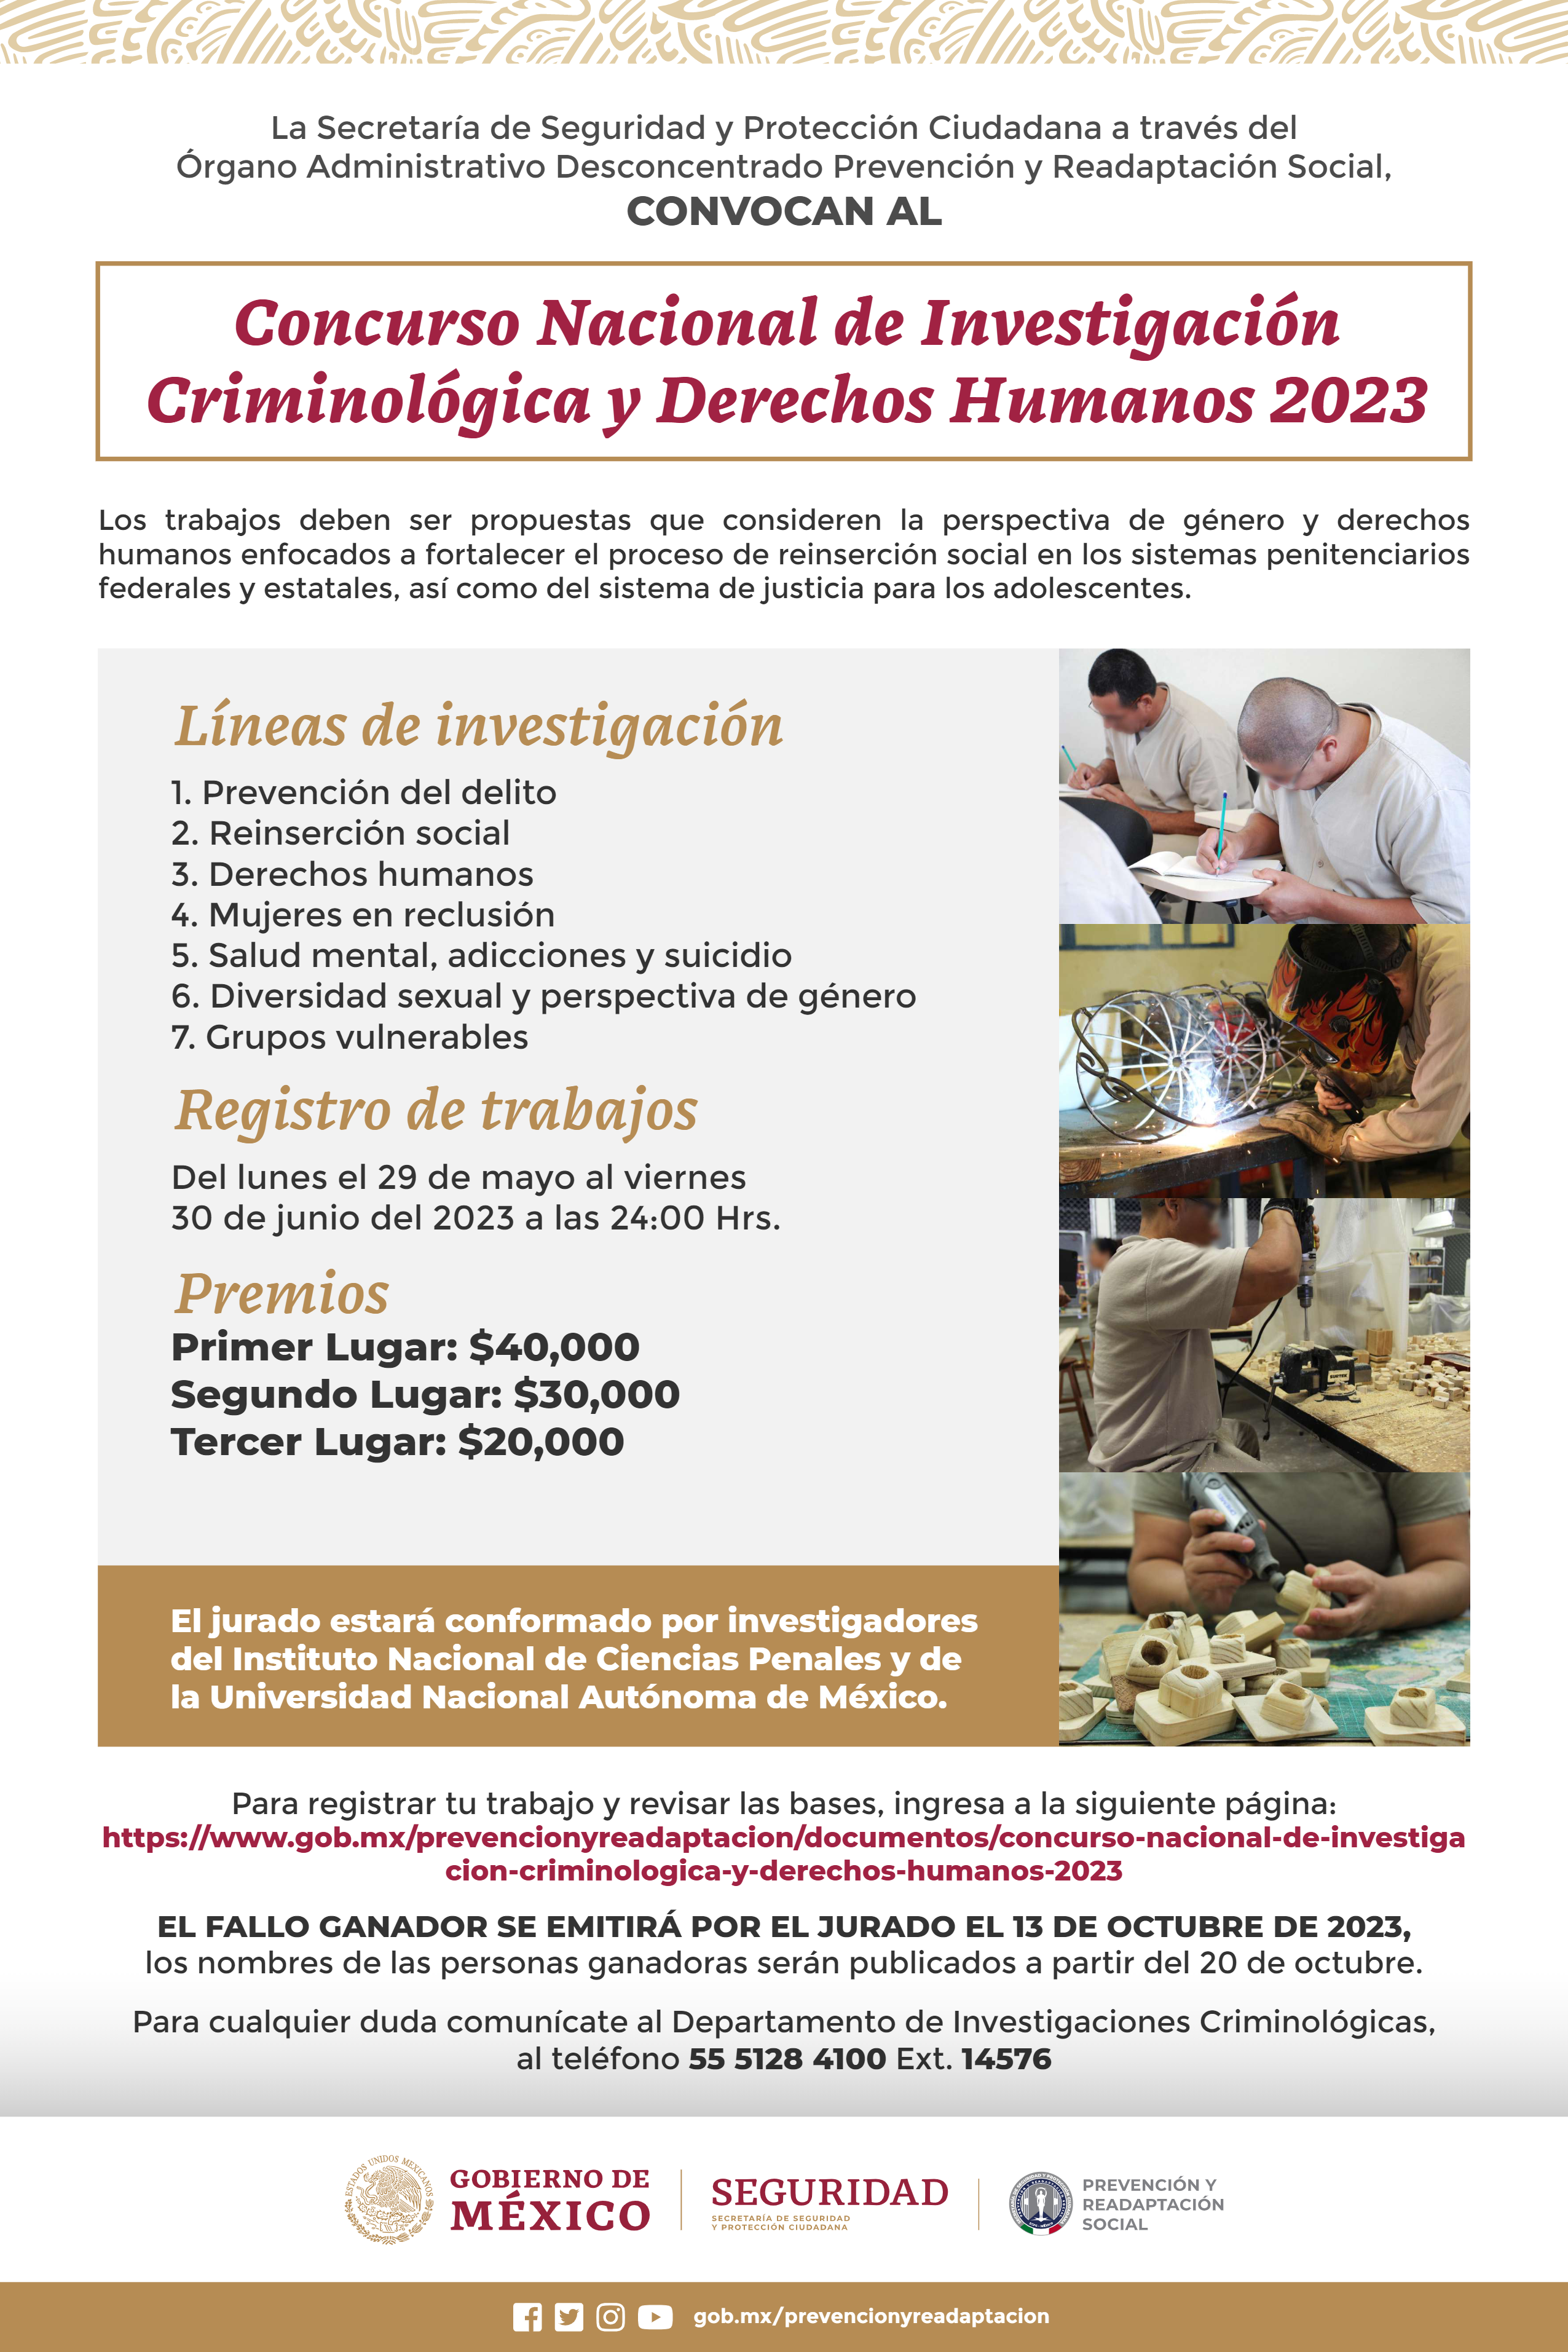 Concurso Nacional de Investigación Criminológica y Derechos Humanos 2023